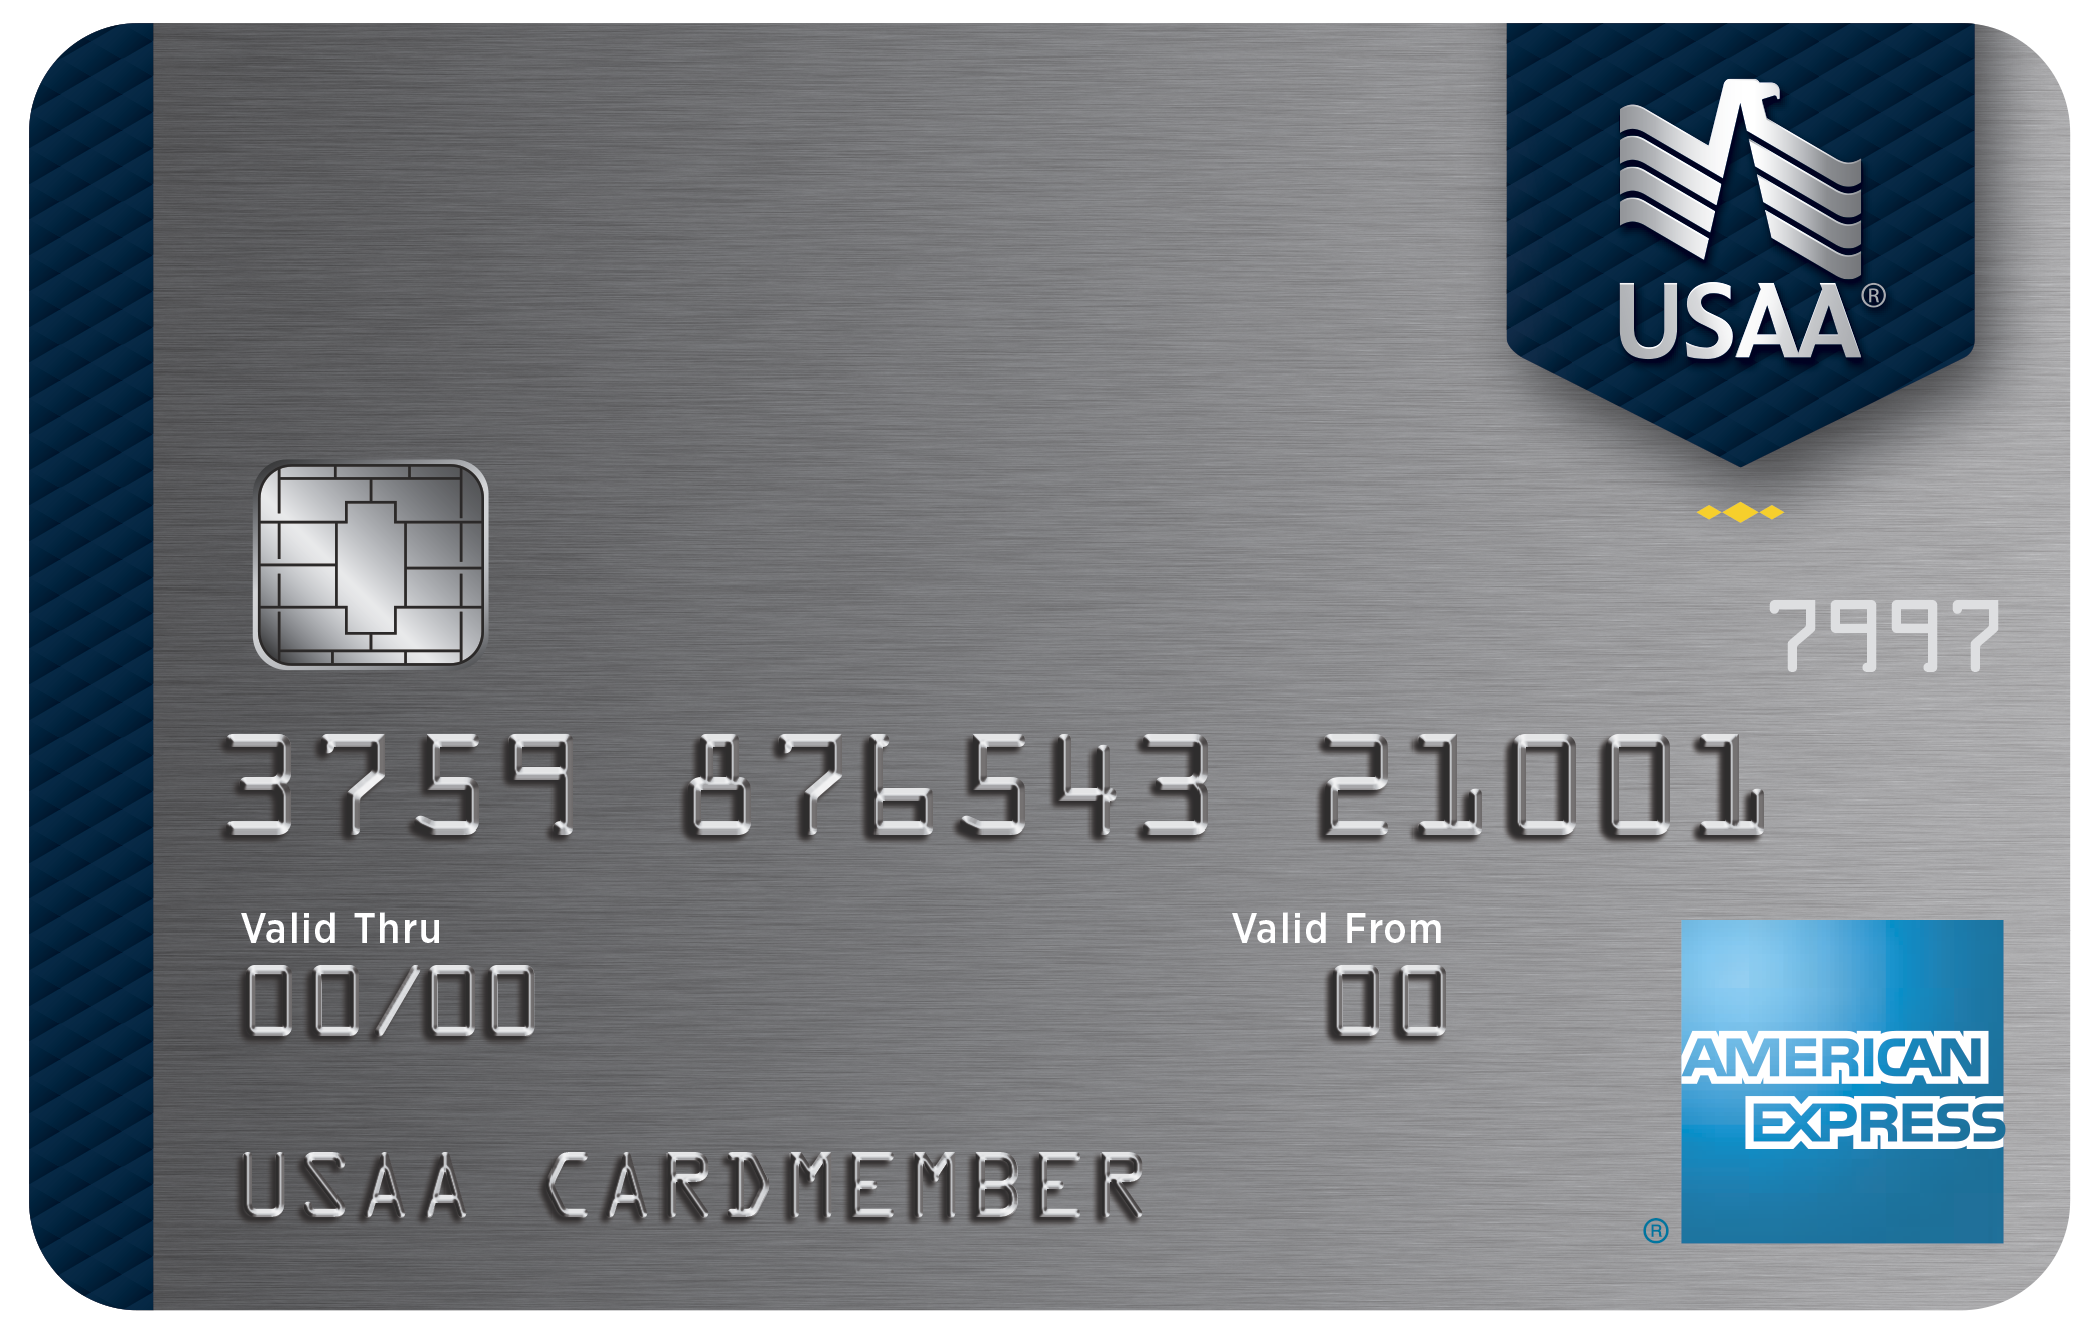 美国信用卡攻略,信用卡推荐,个人信用卡,美国 必备 信用卡,美国 留学生 信用卡,美国美国担保卡信用卡